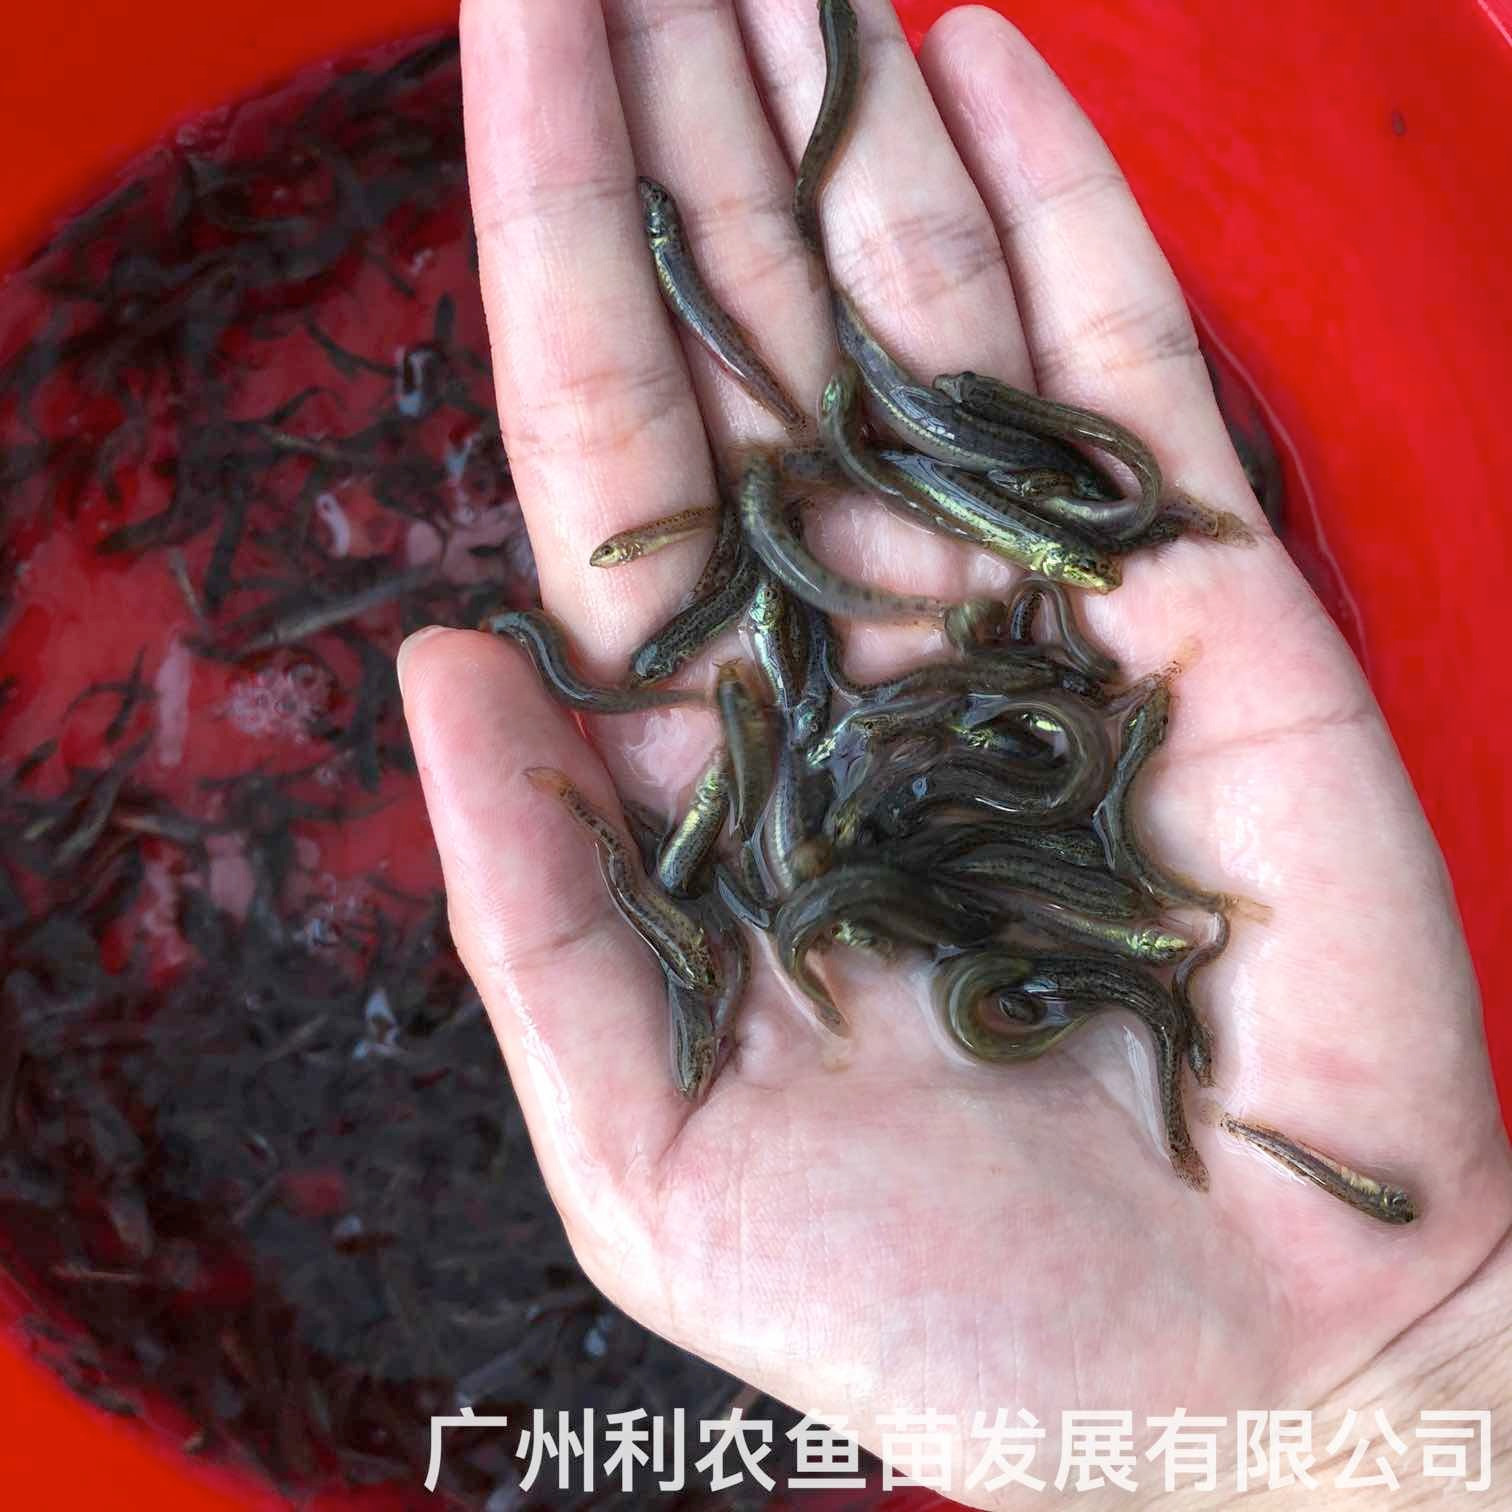 江西新余台湾泥鳅苗出售江西上饶泥鳅鱼苗批发